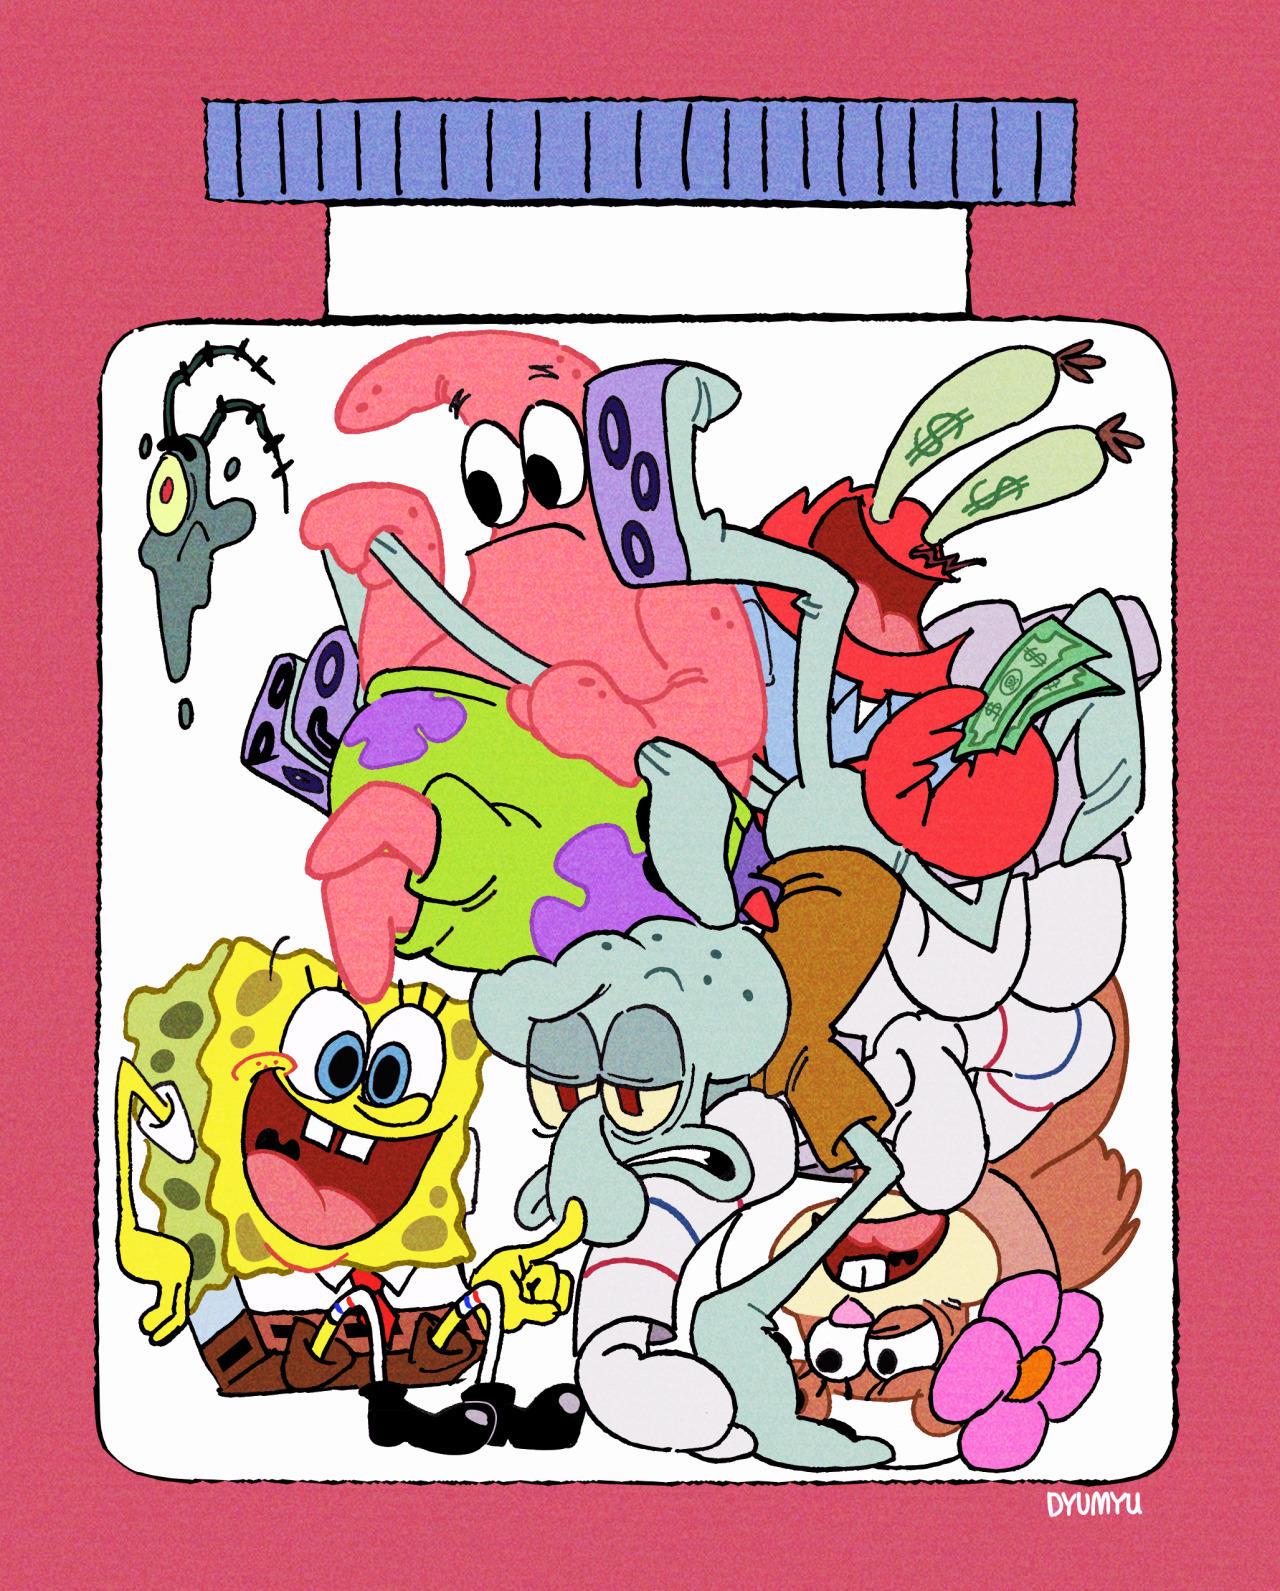 일본 스폰지밥 팬 앤솔로지 프로젝트에 일러스트로 참여했습니다!
I participated in SpongeBob unofficial fan anthology project in Japan! 
スポンジボブファンアンソロジープロジェクトに参加しました!check out the other great artworks here!
→ https://spongebob-fanart-jp.tumblr.com/ #spongebob#spongebob squarepants#spongebob fanart#Fanart#myart#nickelodeon#anthology